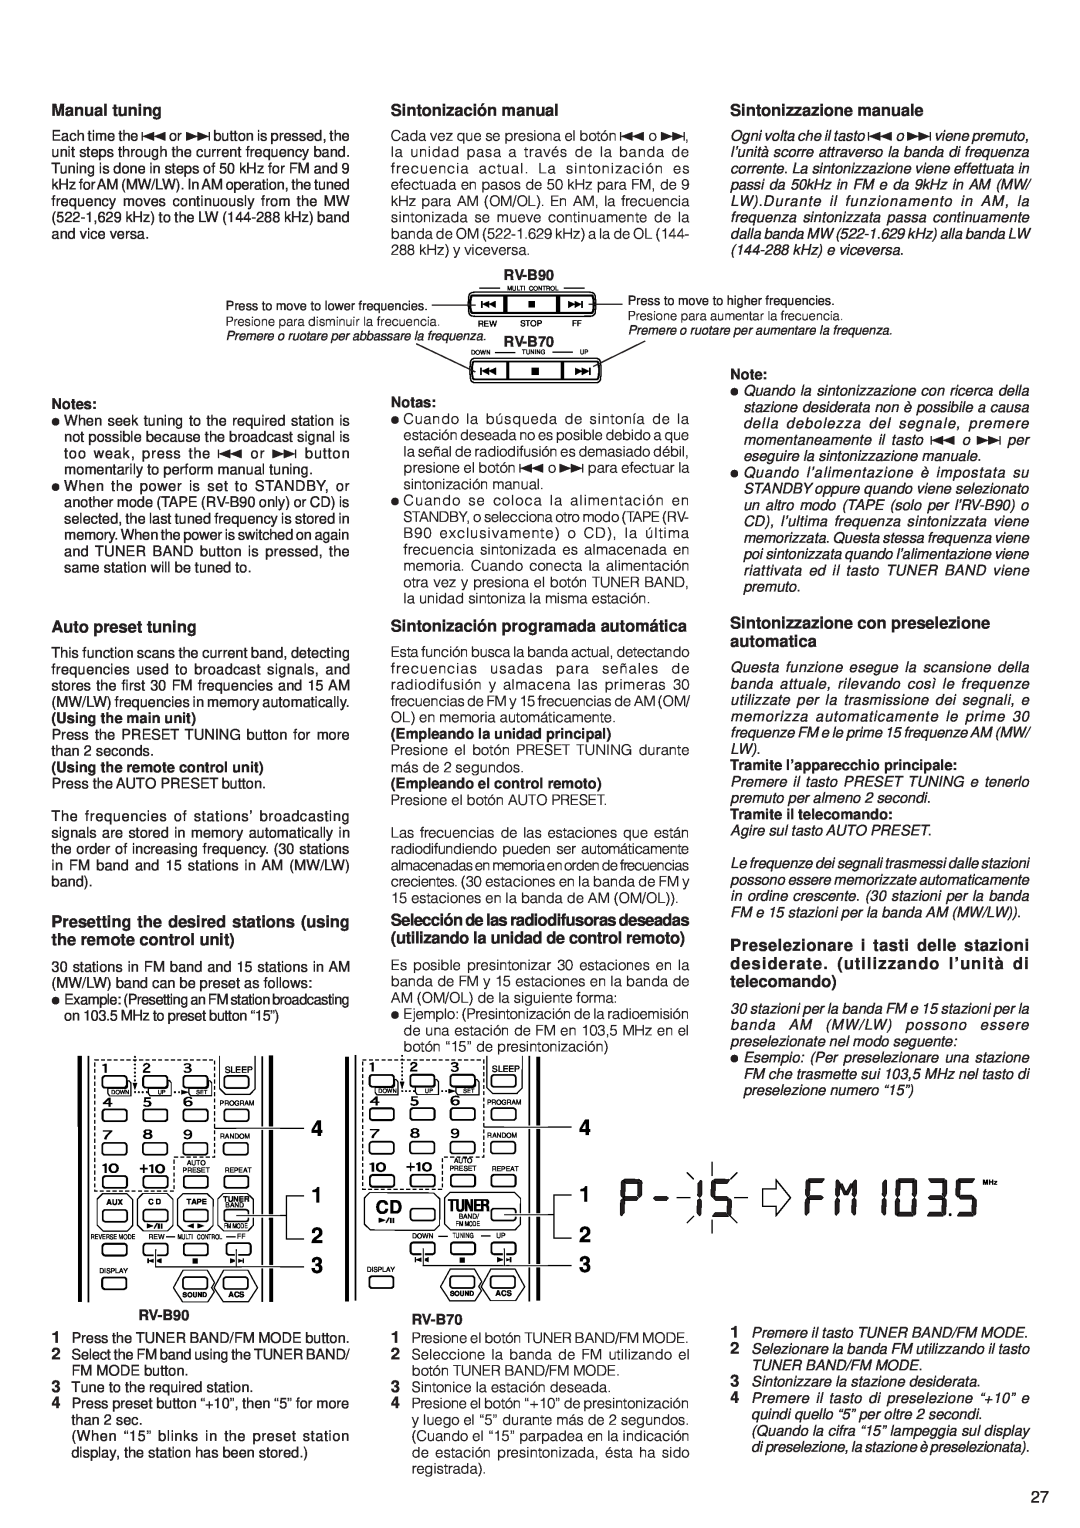 JVC RV-B90, RV-B70 Manual tuning, Sintonización manual, Sintonizzazione manuale, Auto preset tuning 